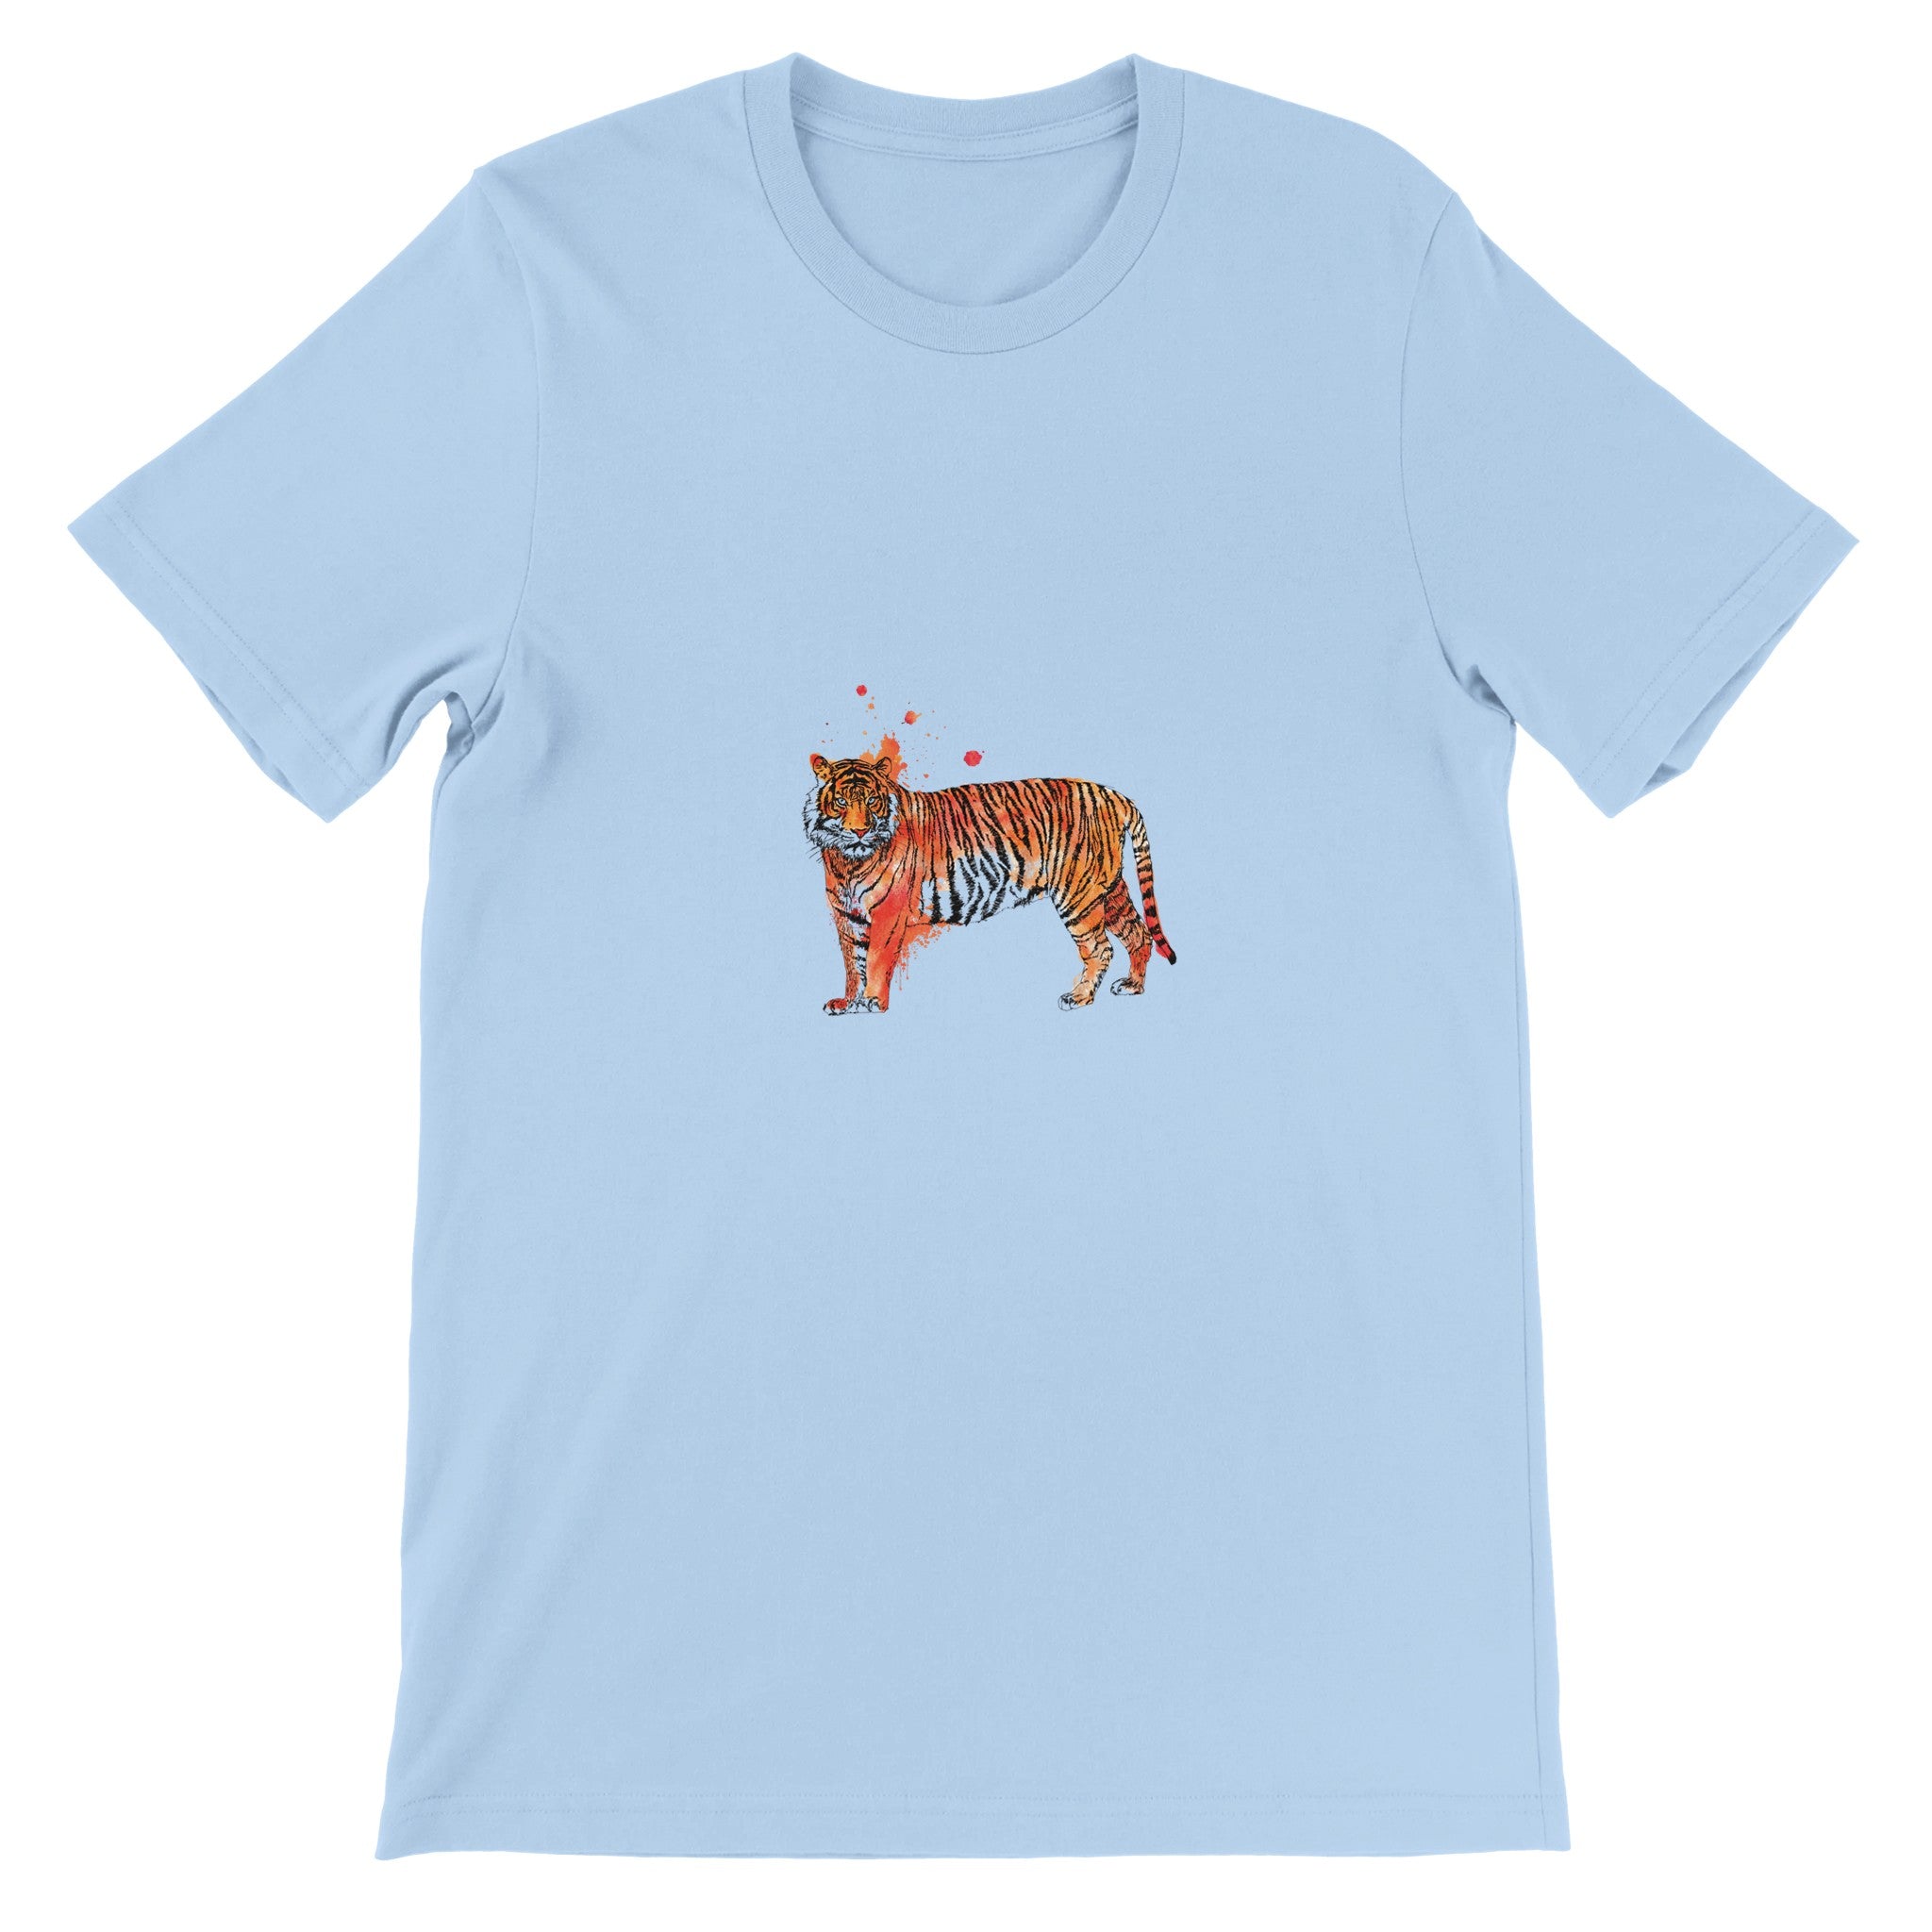 Tiger Illustration Crewneck T-shirt - Optimalprint